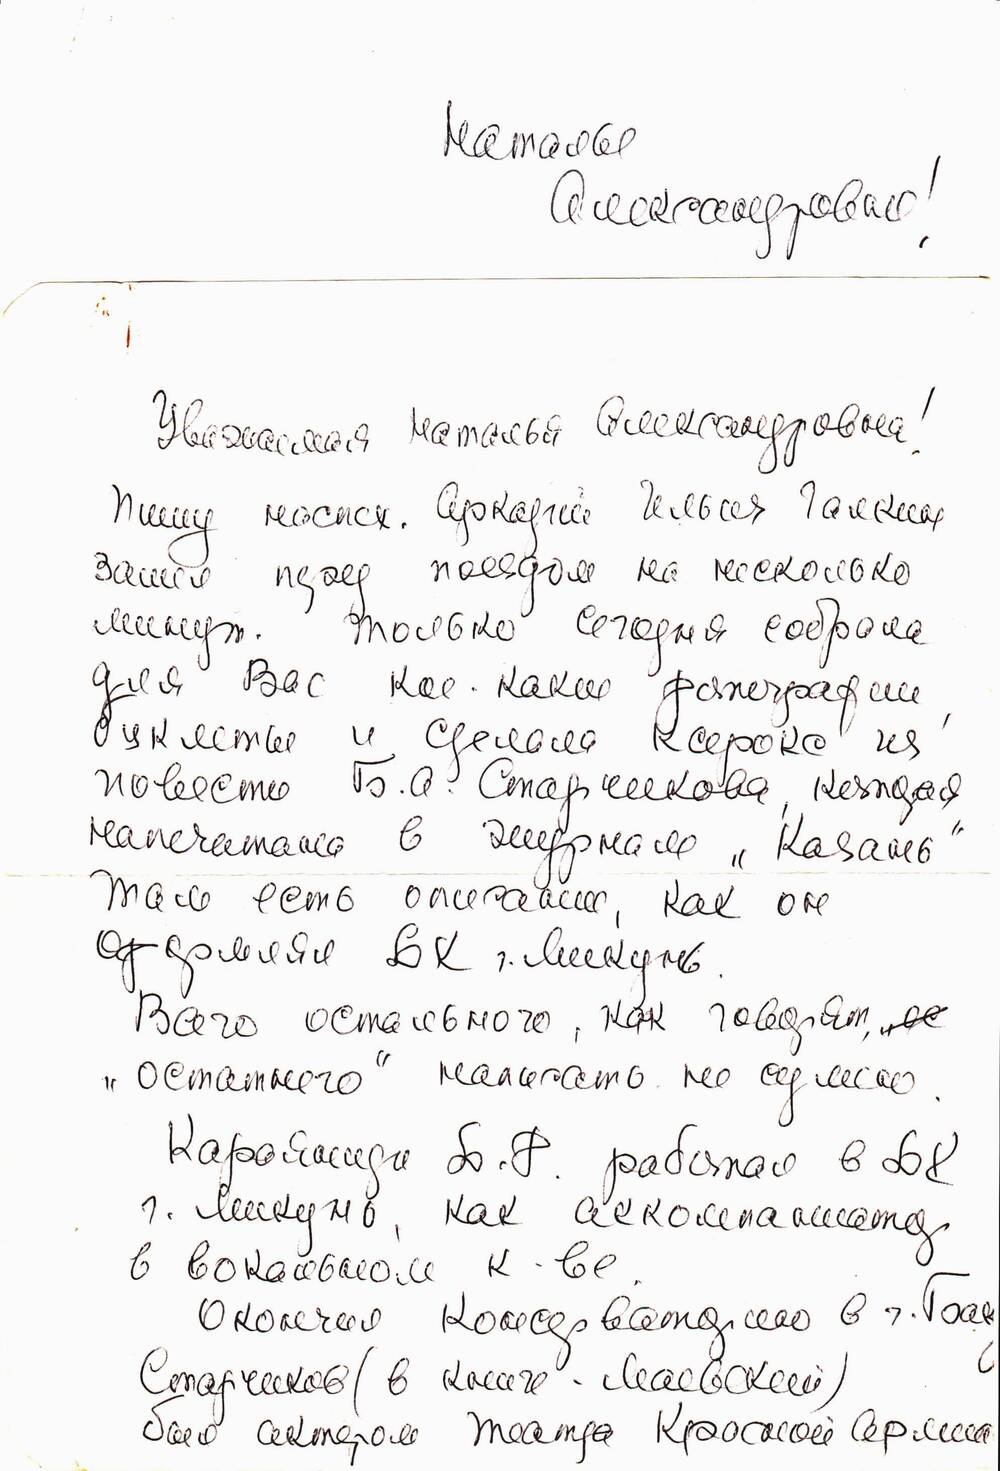 Письмо в конверте на имя Шмаргиловой Натальи Александровны от Петкевич Тамары Владиславовны. 